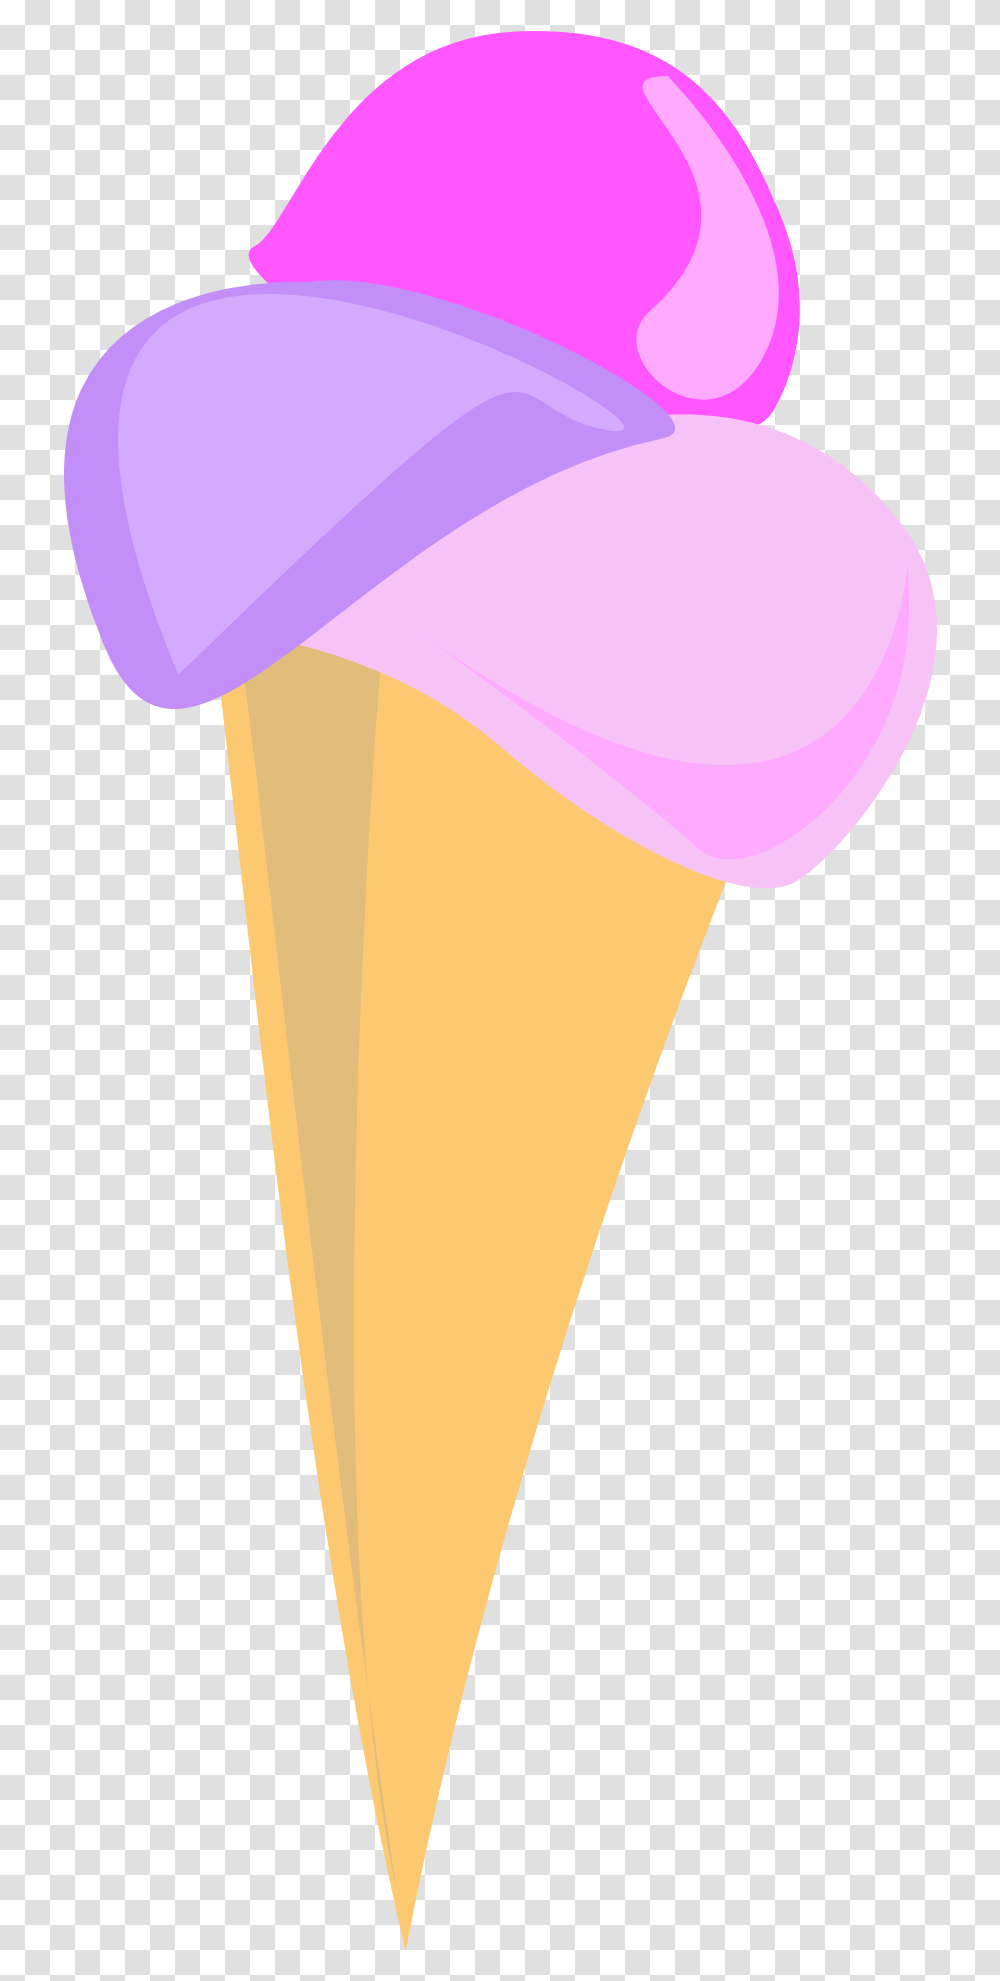 Ice Cream Ice Cream Cartoon, Cone, Dessert, Food, Creme Transparent Png